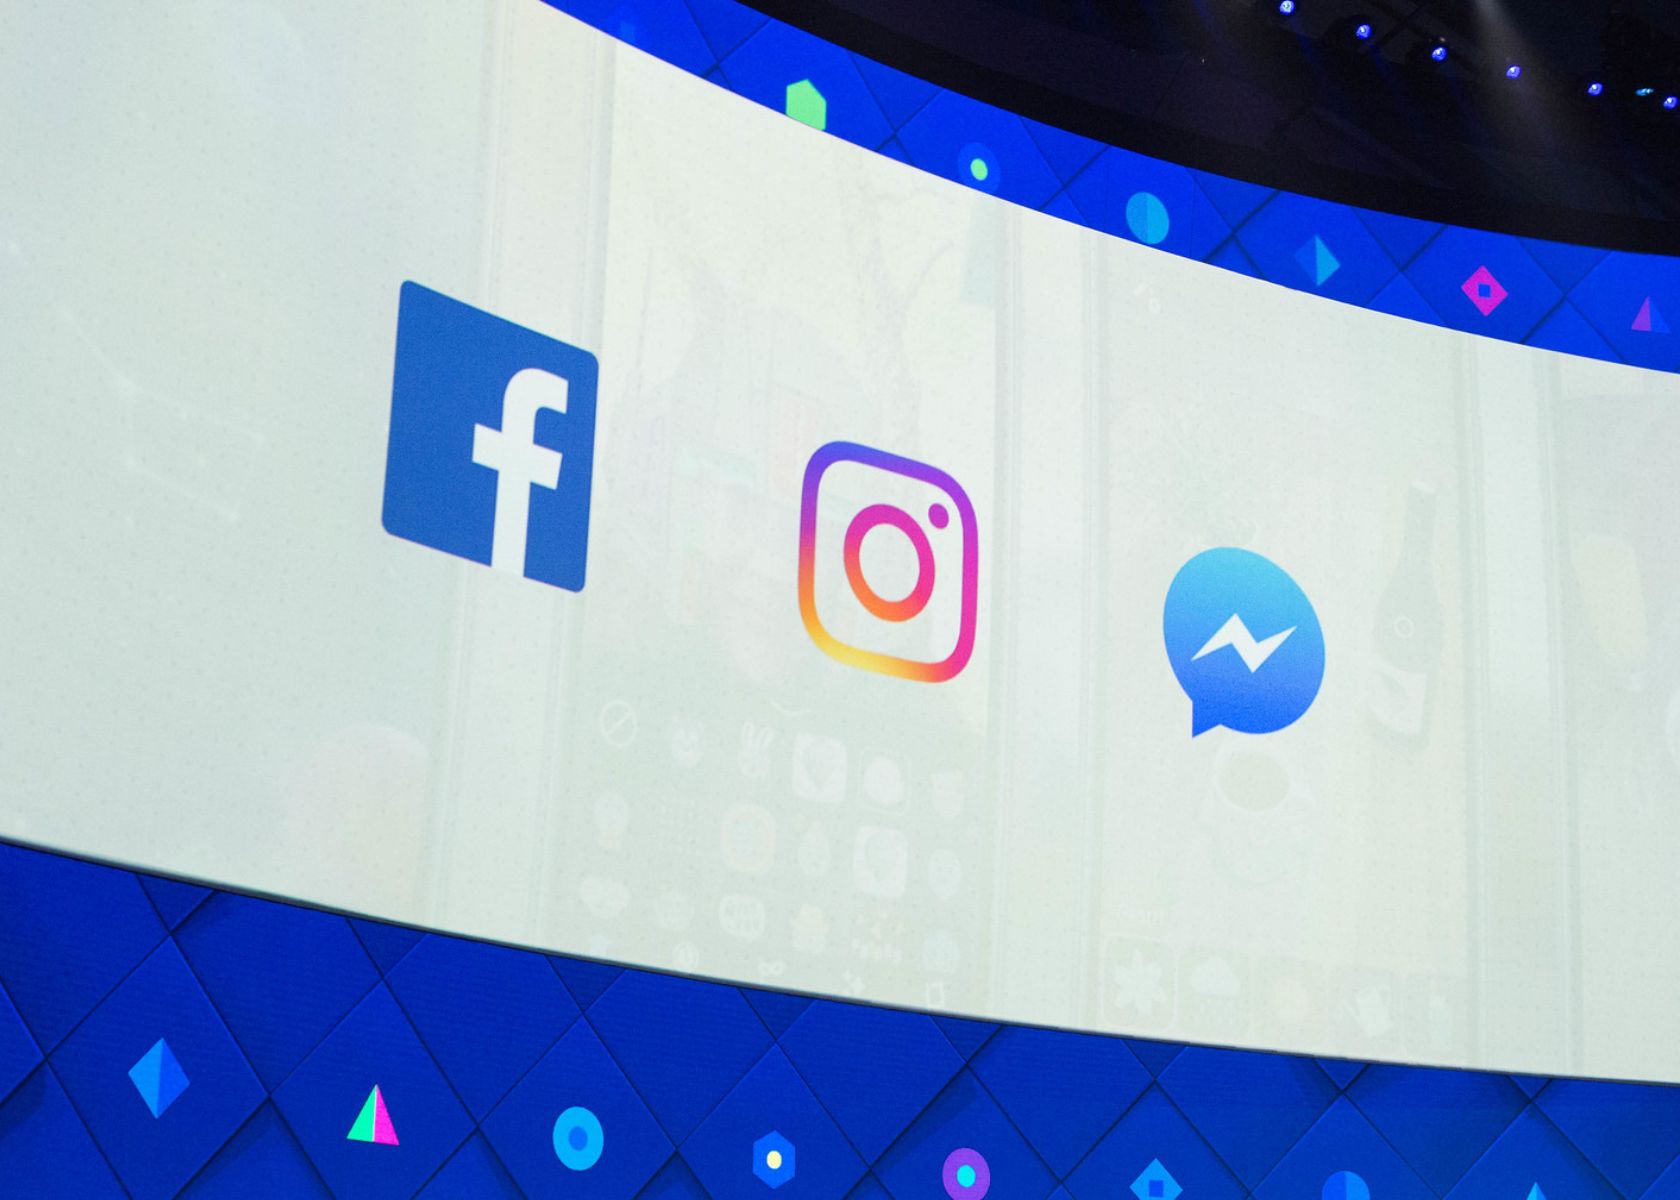 Meta to End Cross-Messaging Between Instagram and Facebook